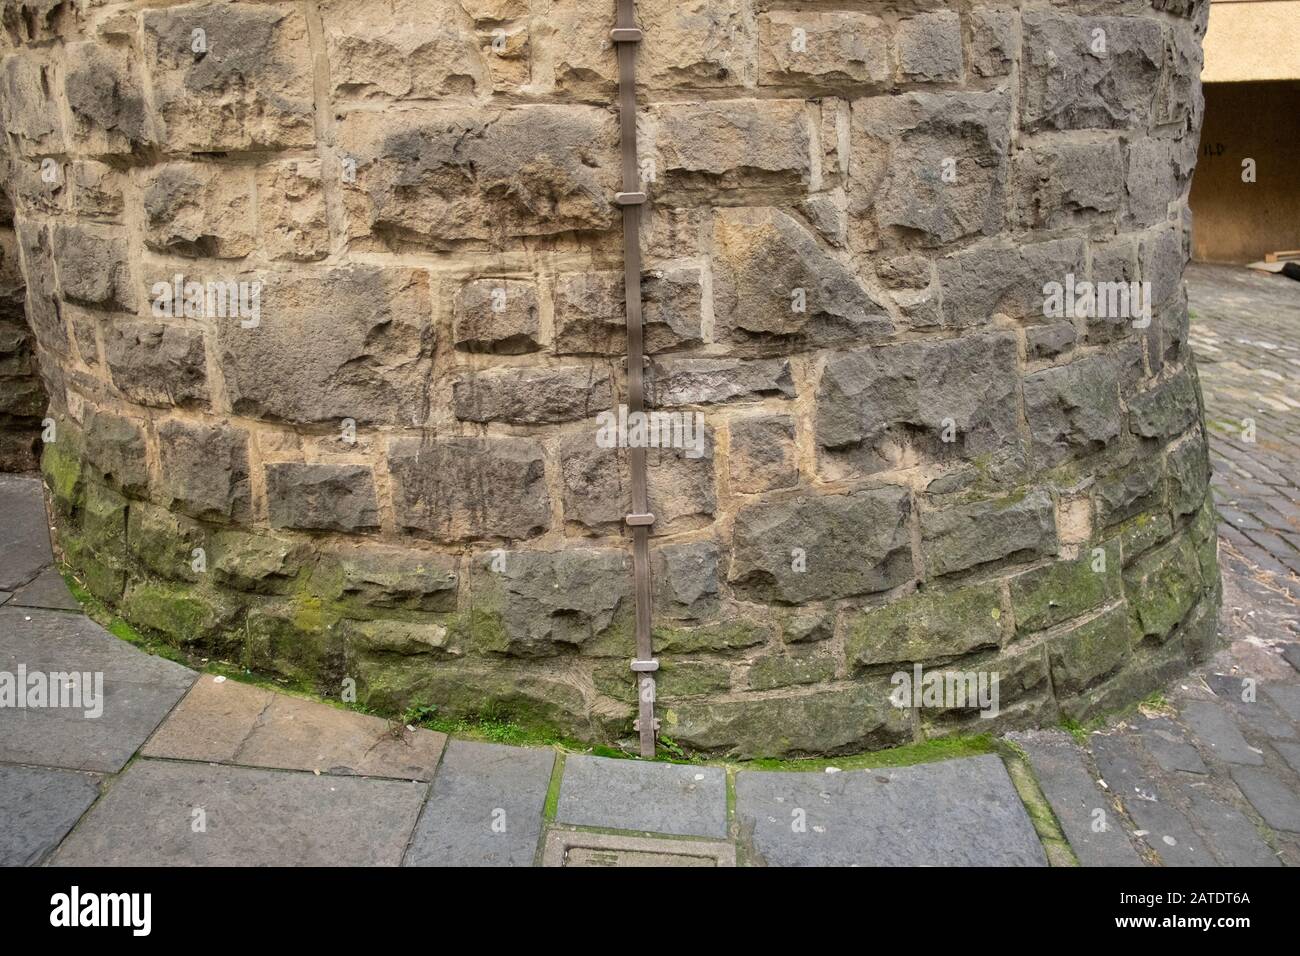 Vieux mur en pierre incurvé avec bande métallique de conducteur de foudre, traces de destruction et moisissure verte, Édimbourg, Écosse Banque D'Images